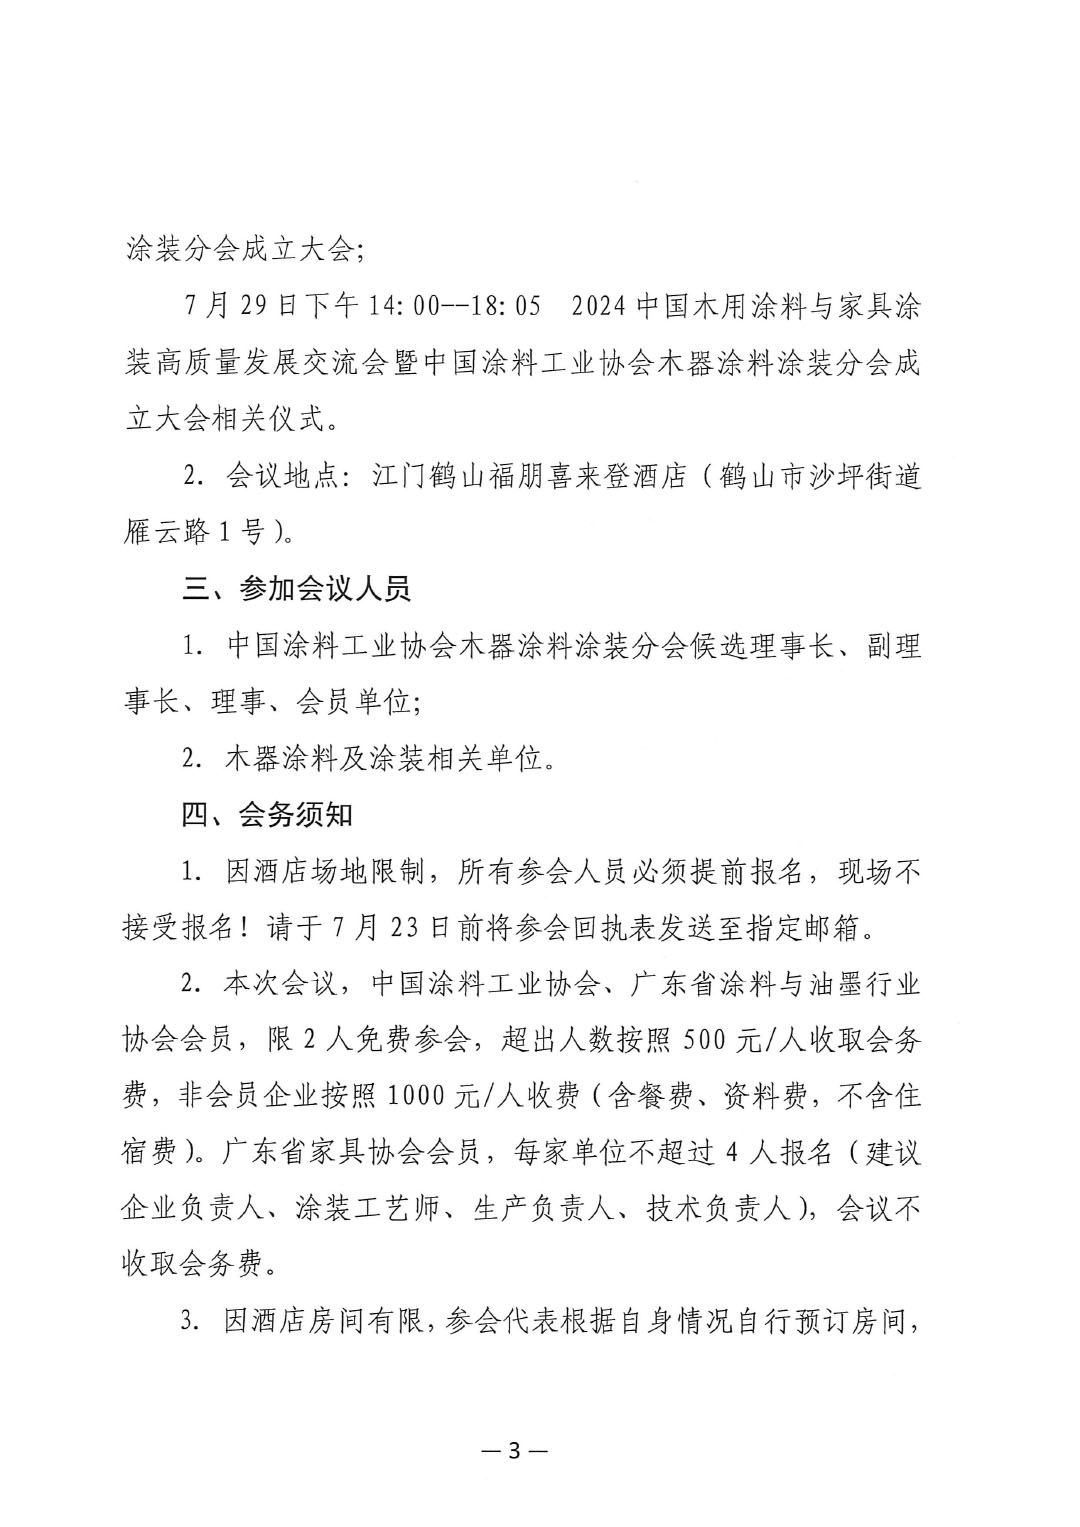 关于召开中国涂料工业协会木器涂料分会成立大会的通知-3